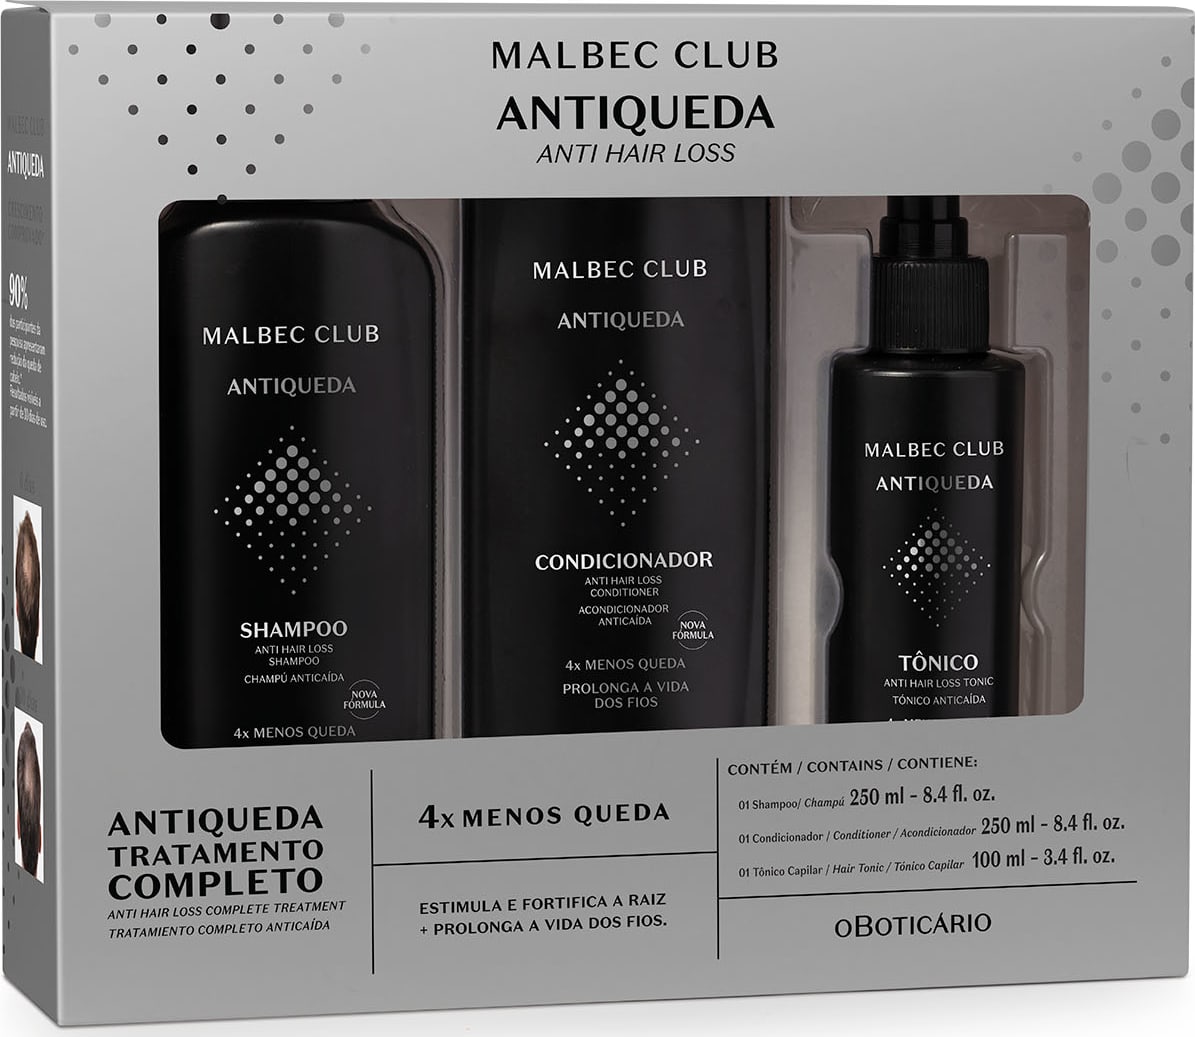 Shampoo Antiqueda Malbec Club o Boticário